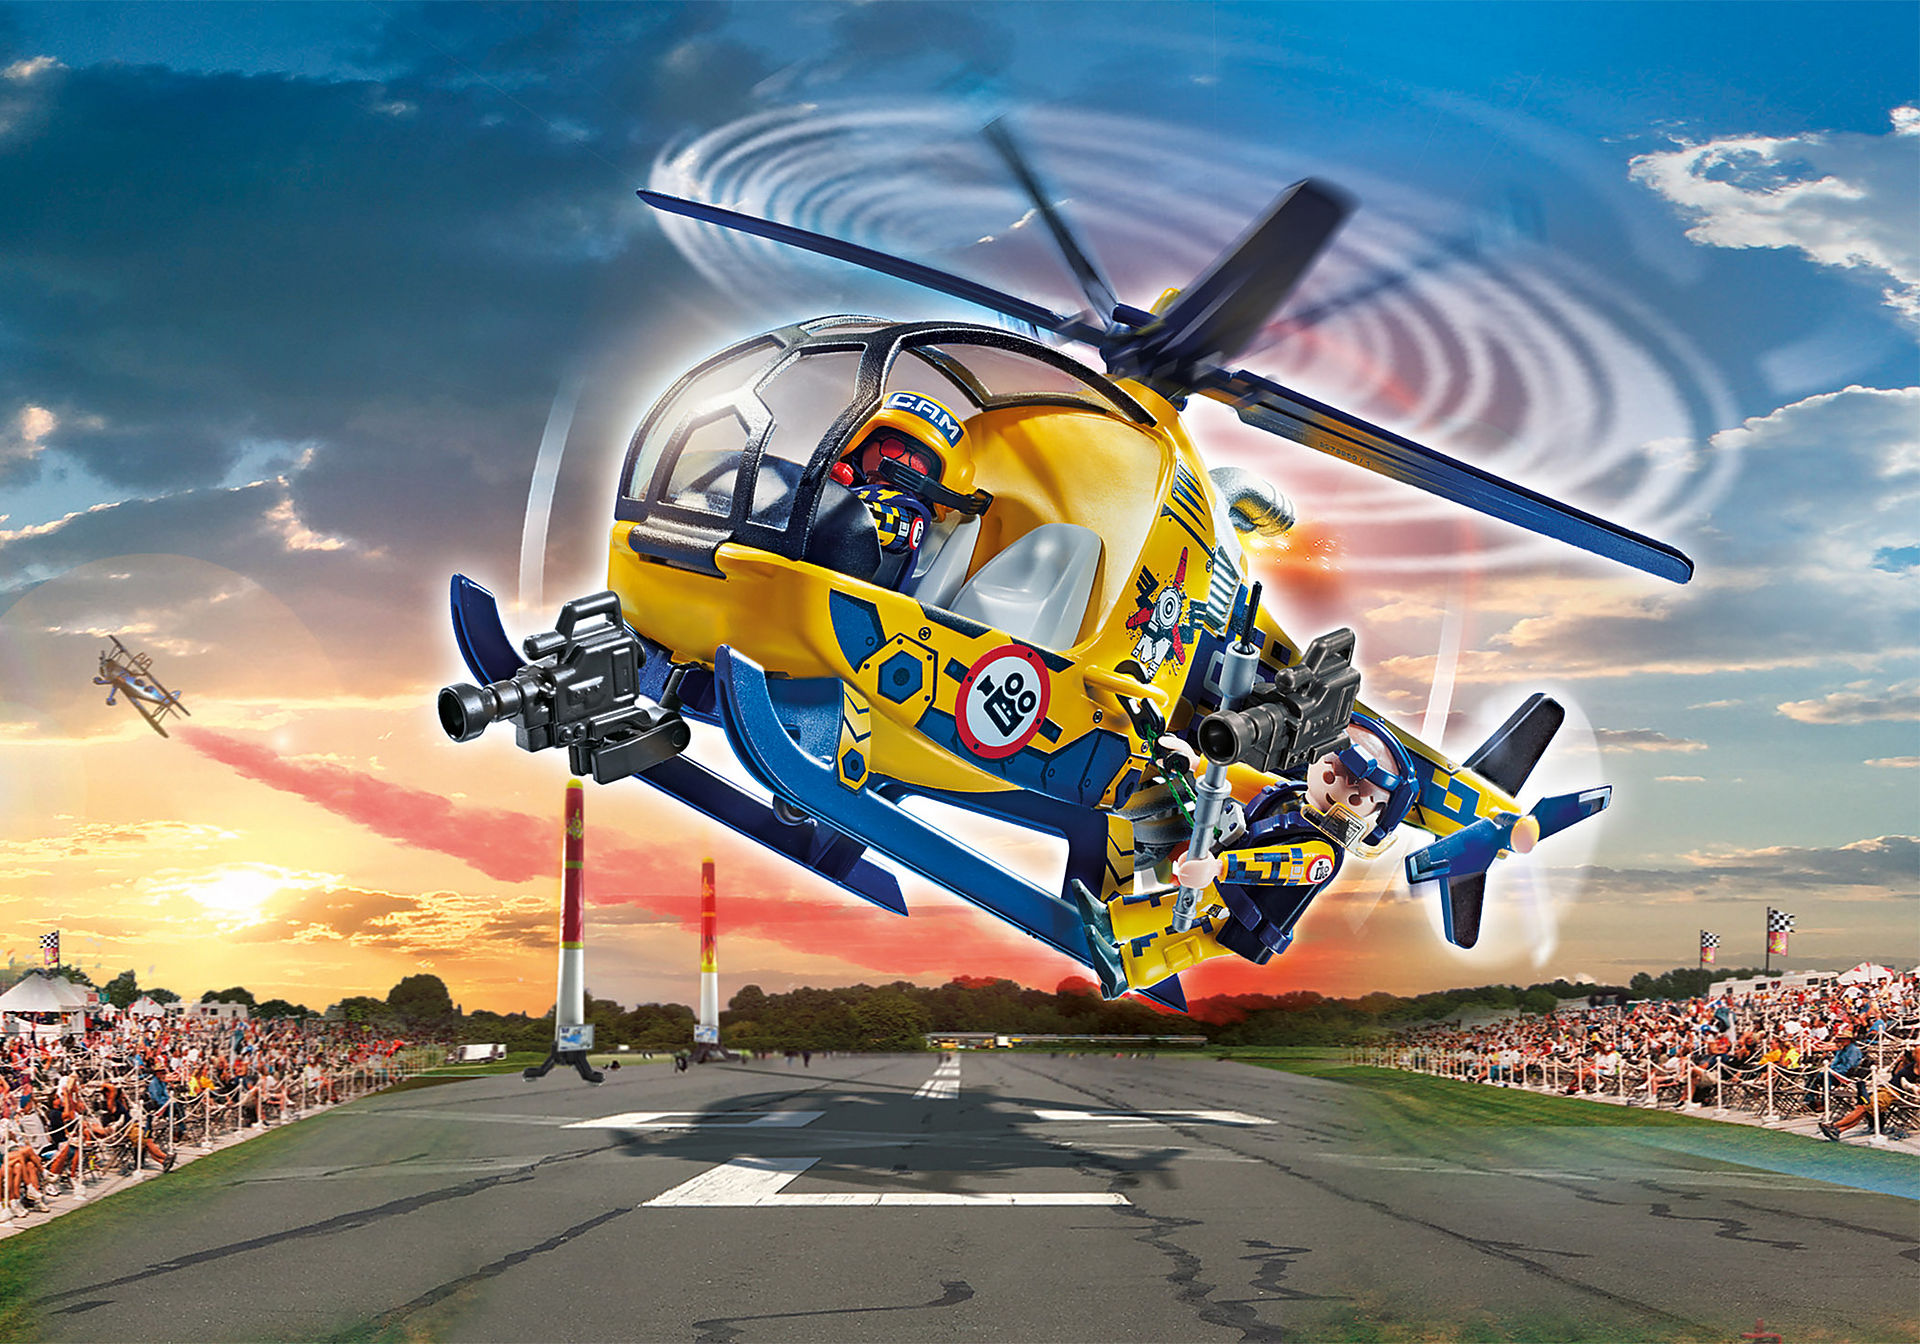 70833 Air Stunt Show Elicottero con troupe per le riprese zoom image1